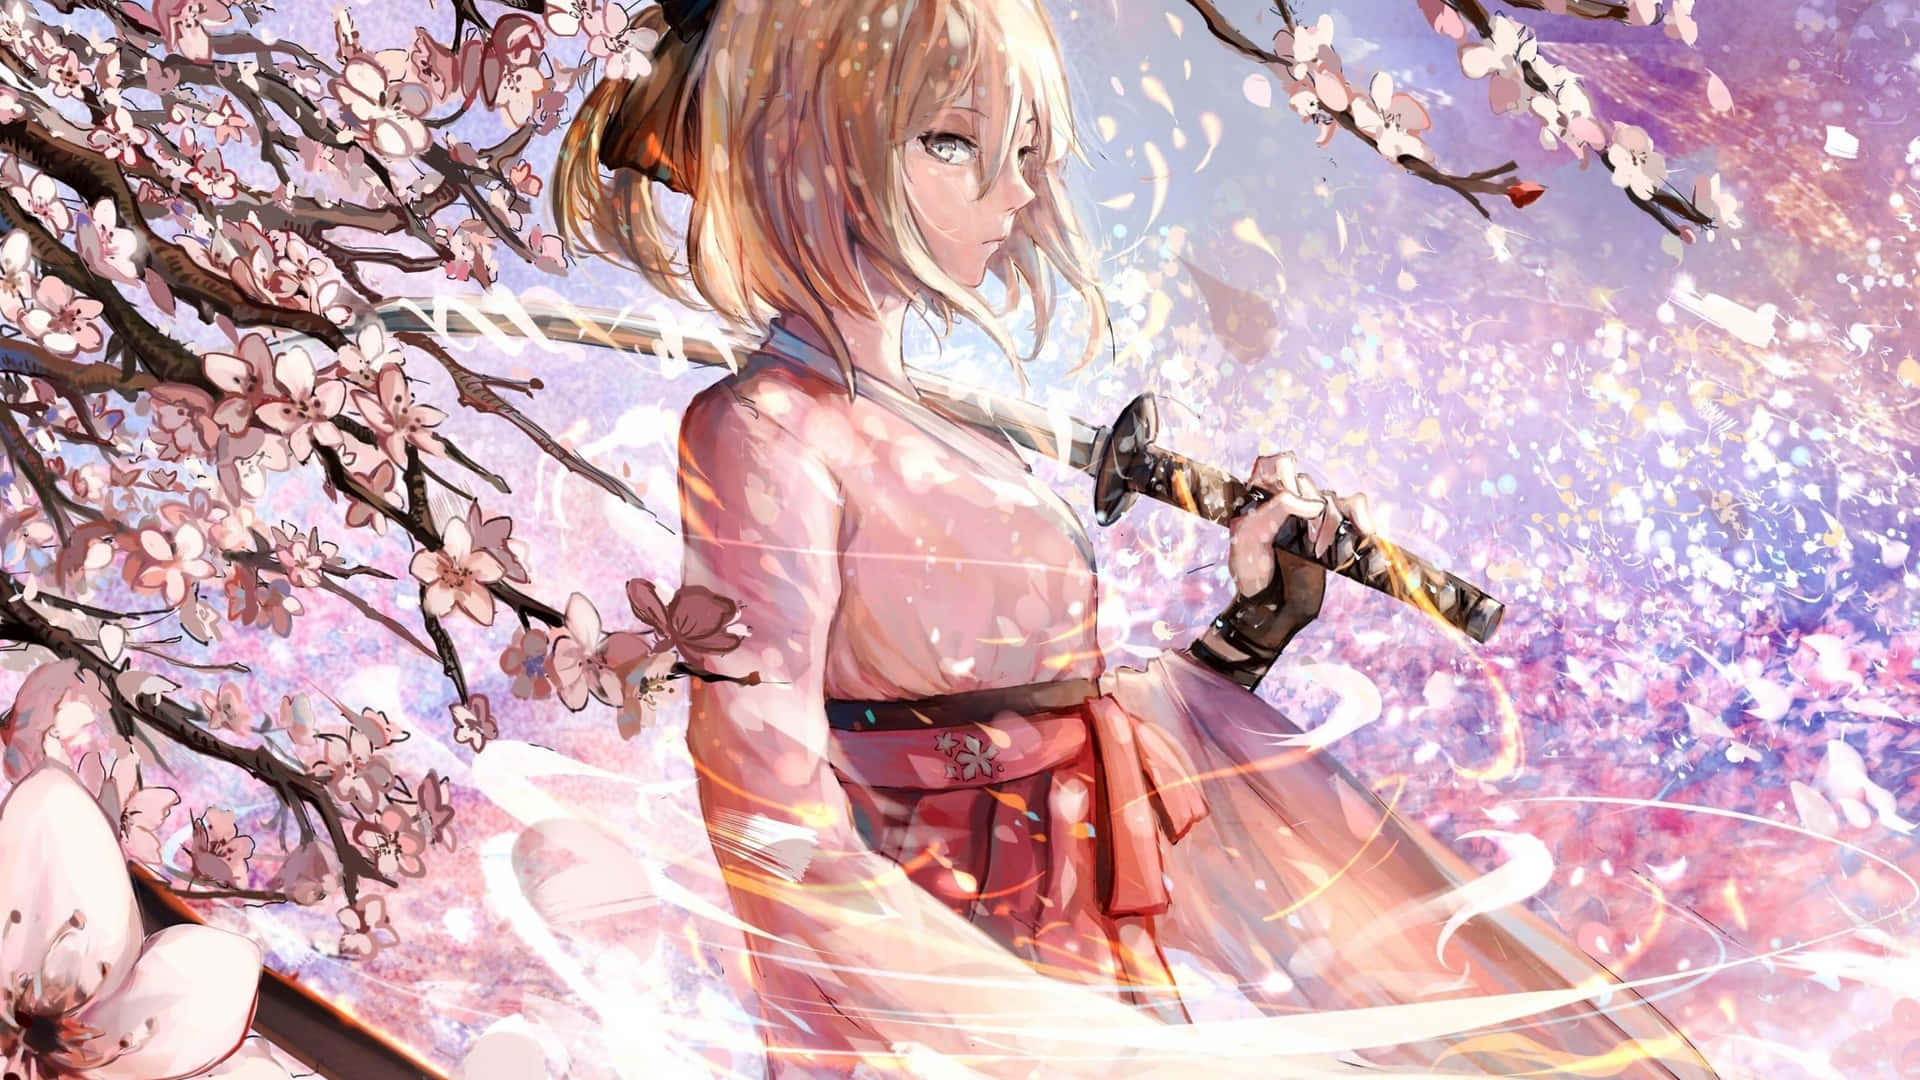 Chicasamurái De Sakura En El Anime Fate Grand Order. Fondo de pantalla